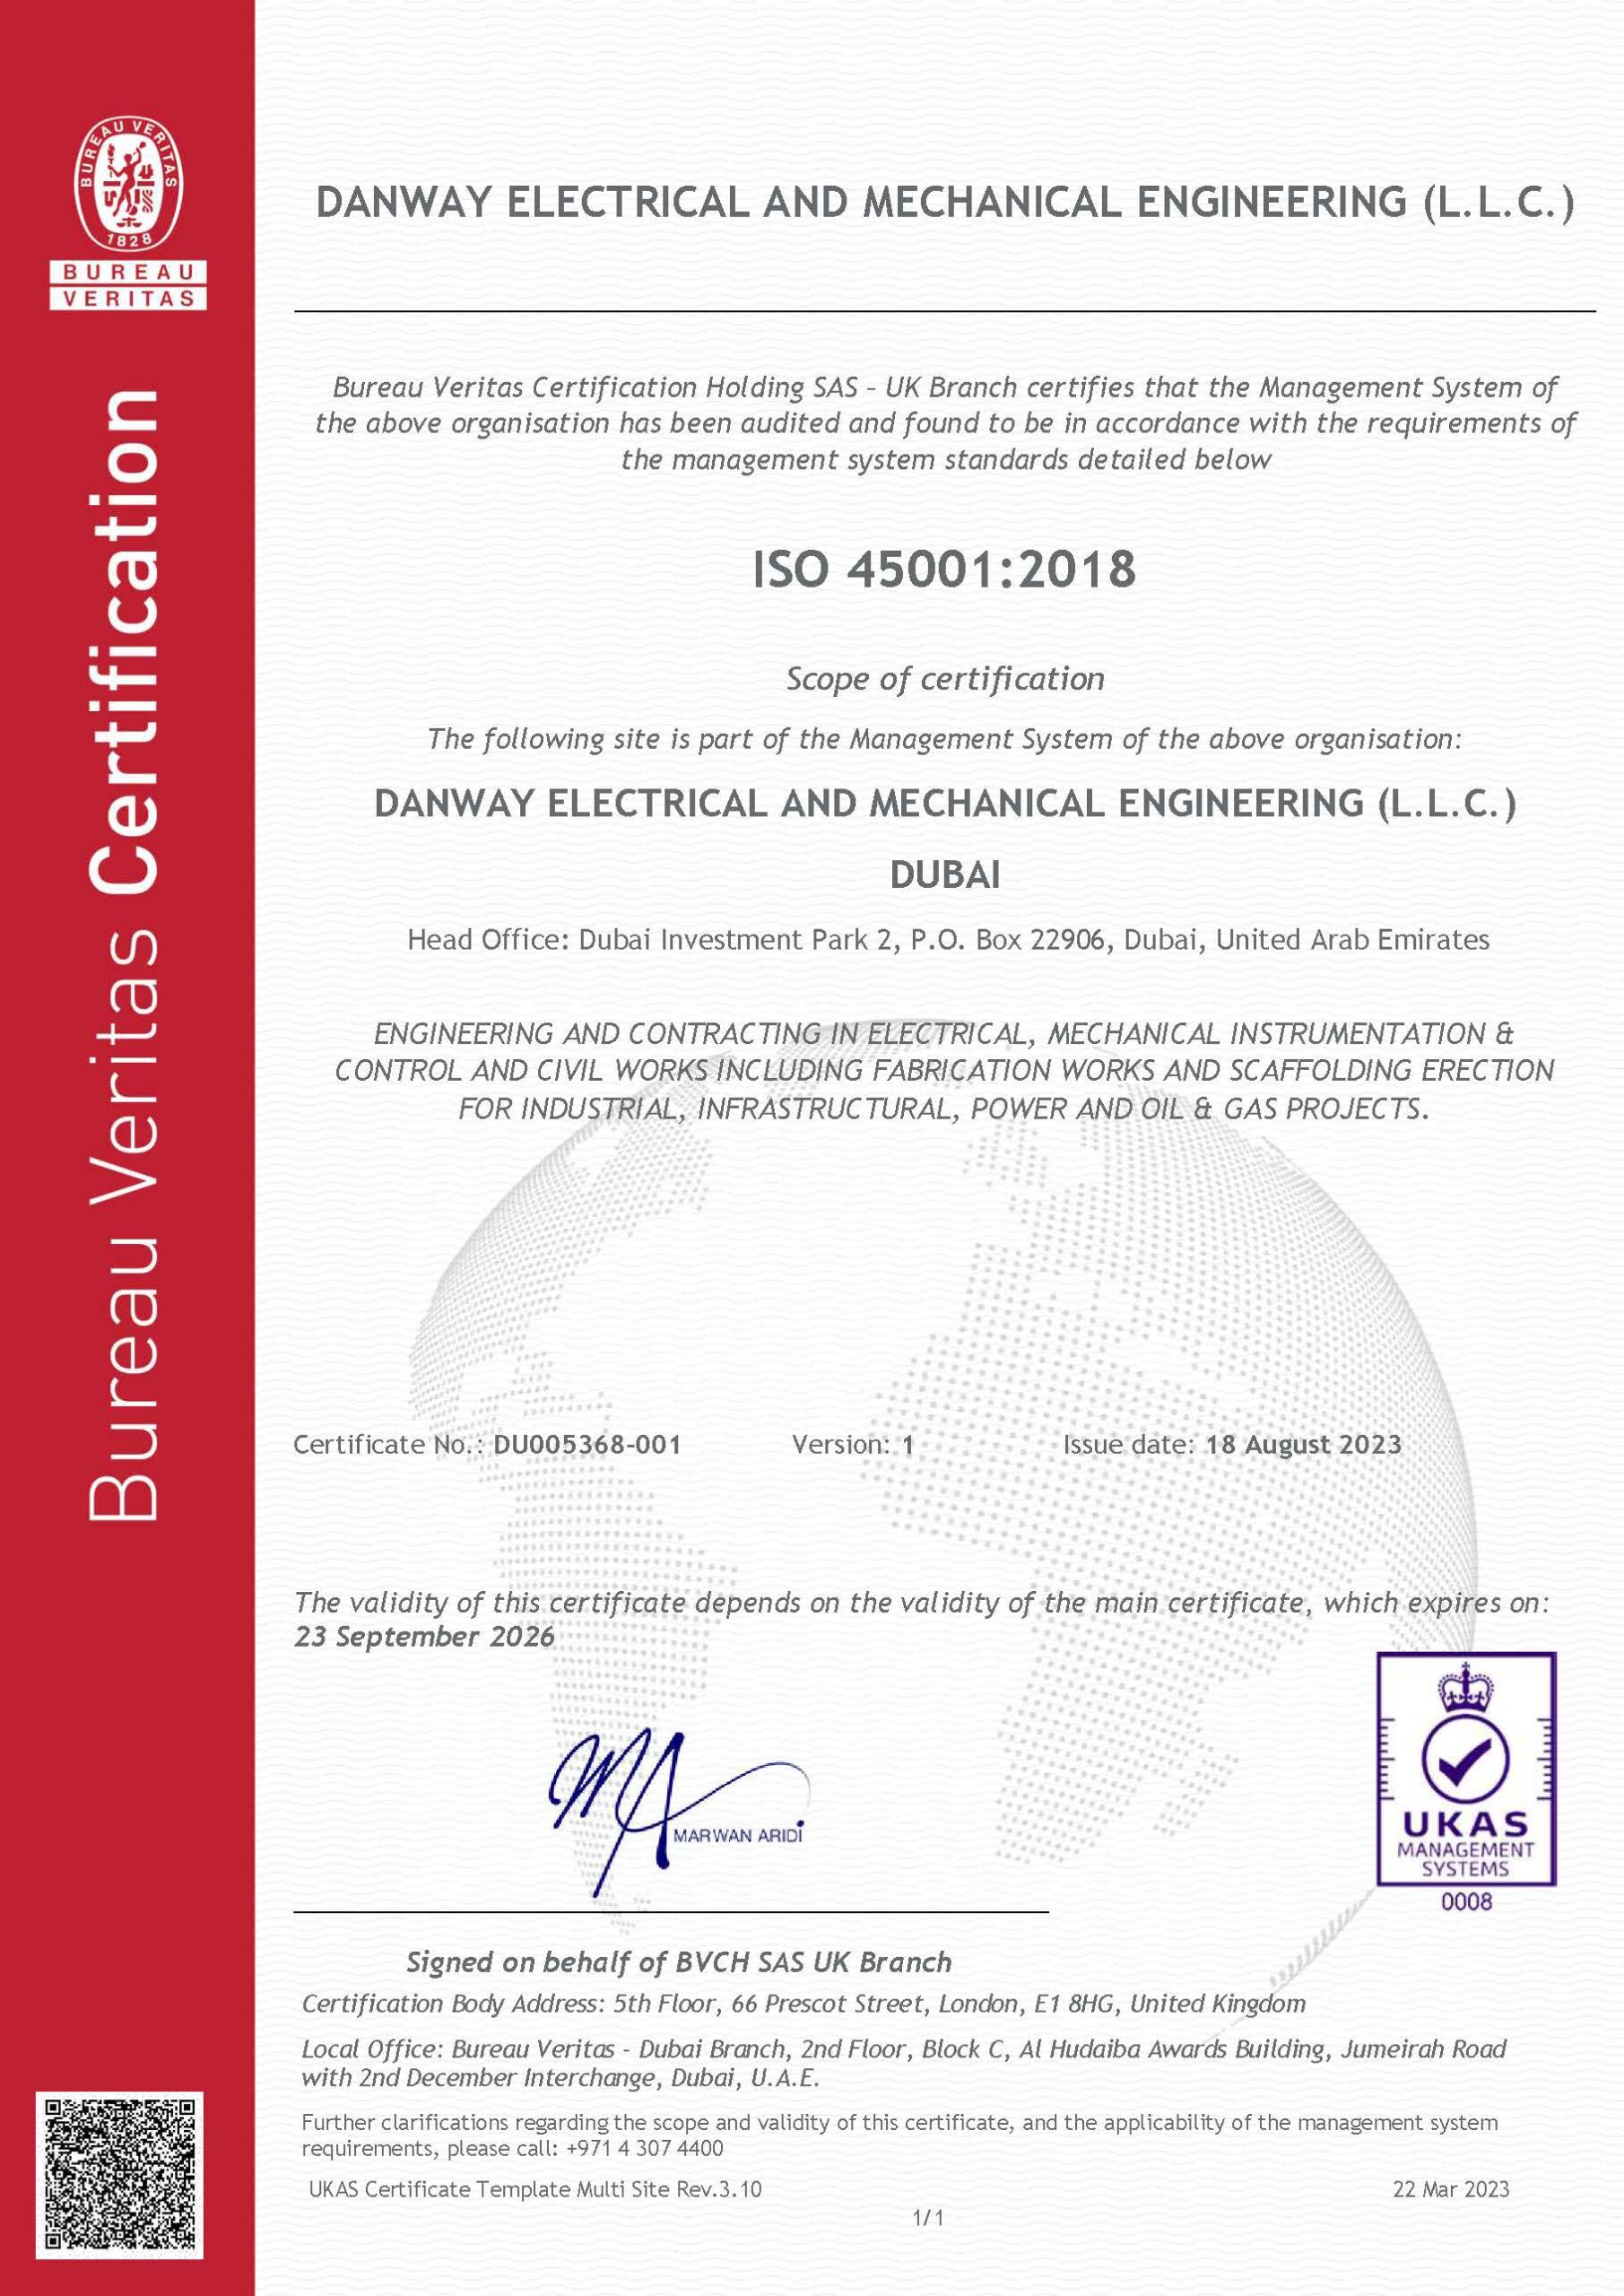 ISO45001:2018 Danway EME, Dubai